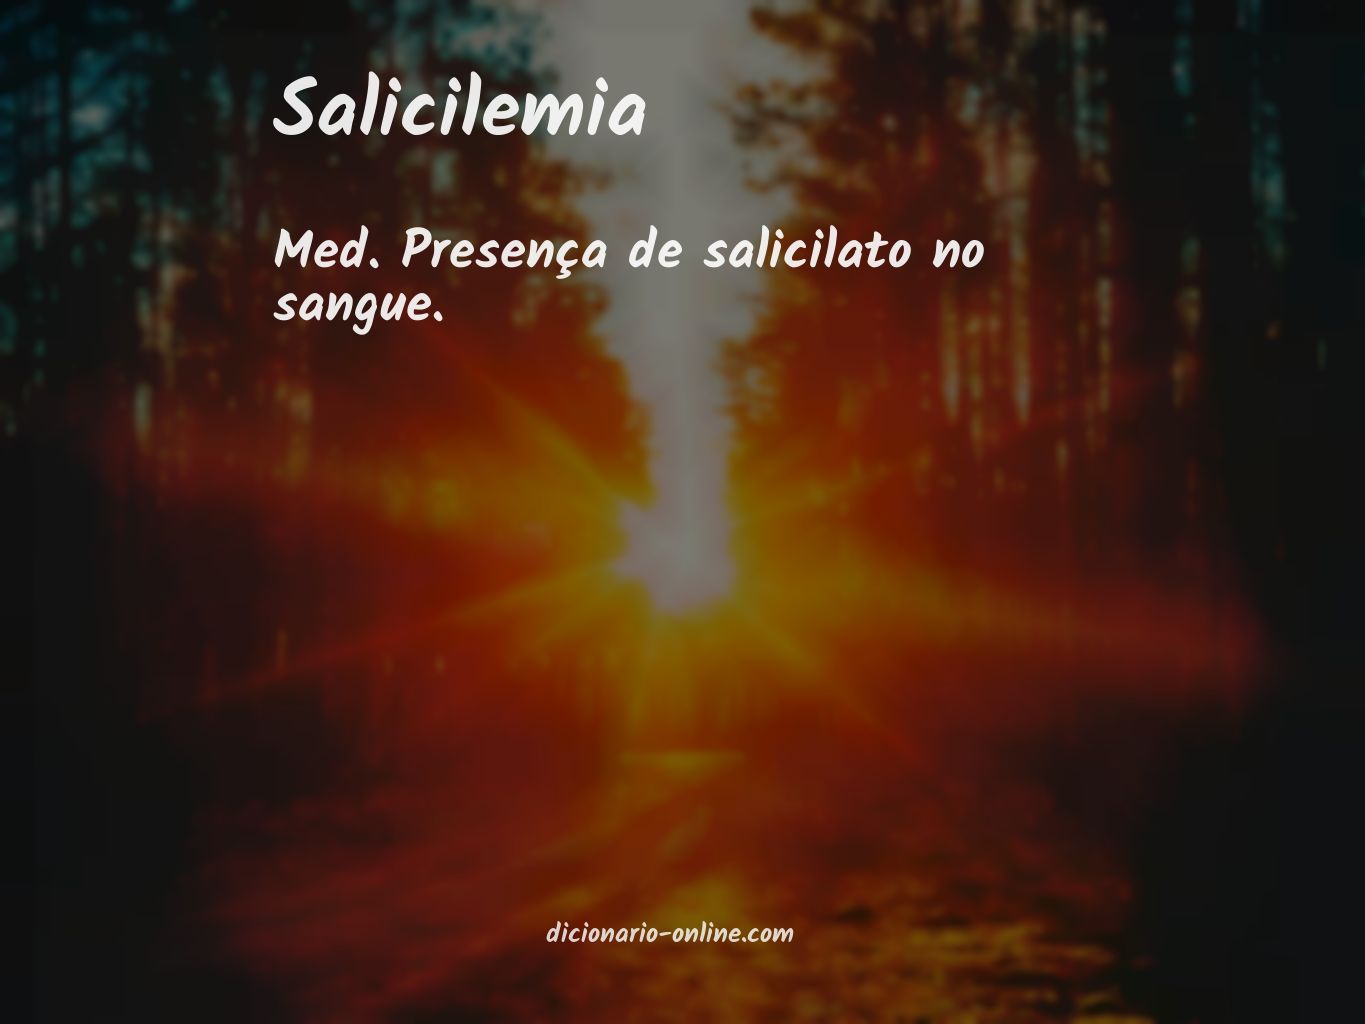 Significado de salicilemia